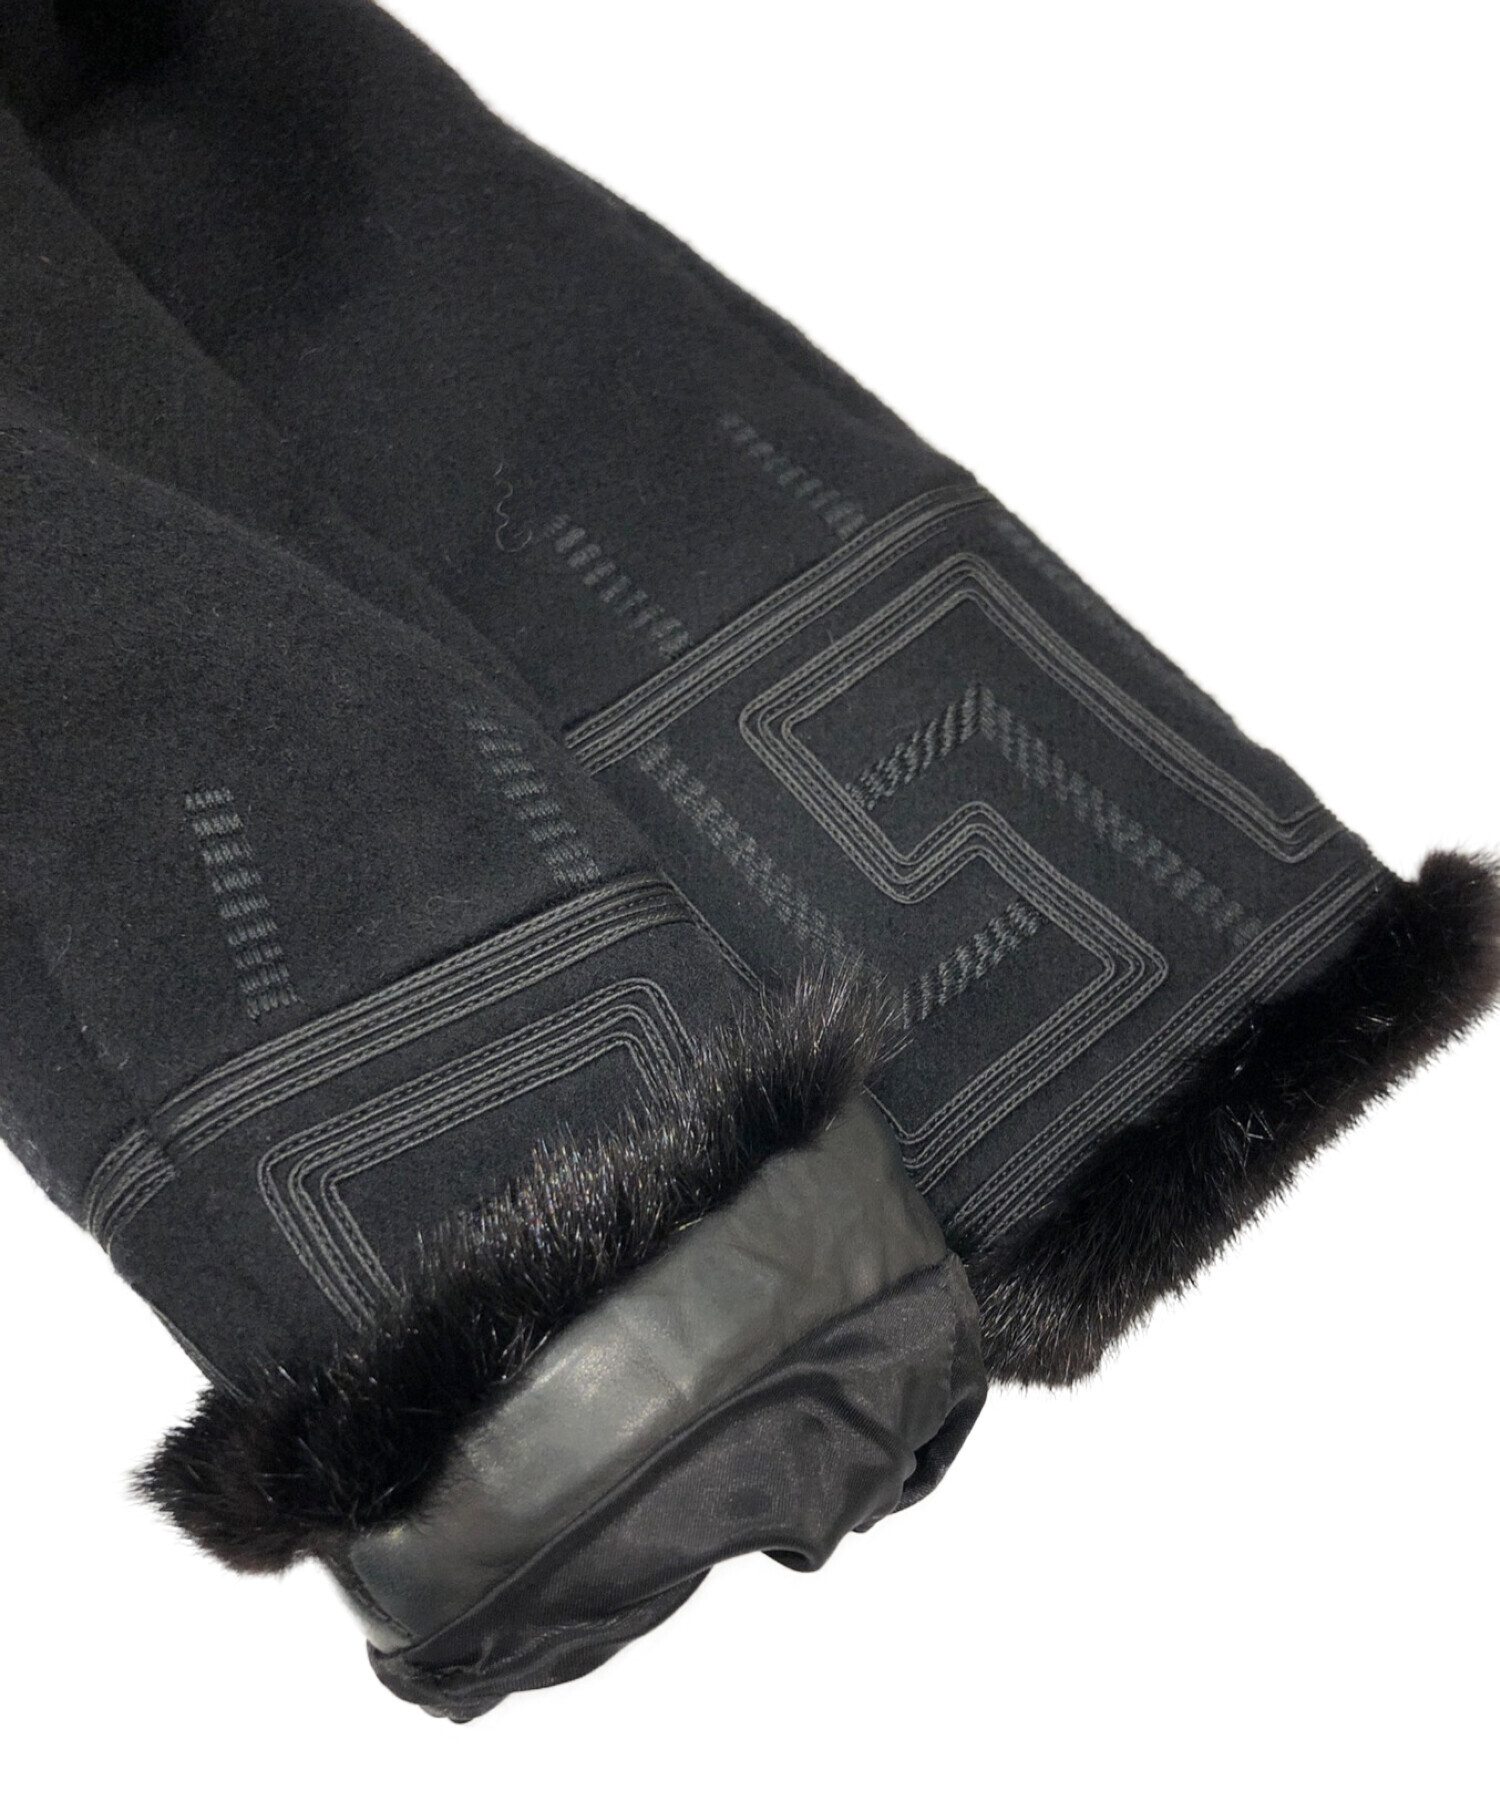 VERSACE (ヴェルサーチ) カシミヤ混デザインコート ブラック サイズ:38